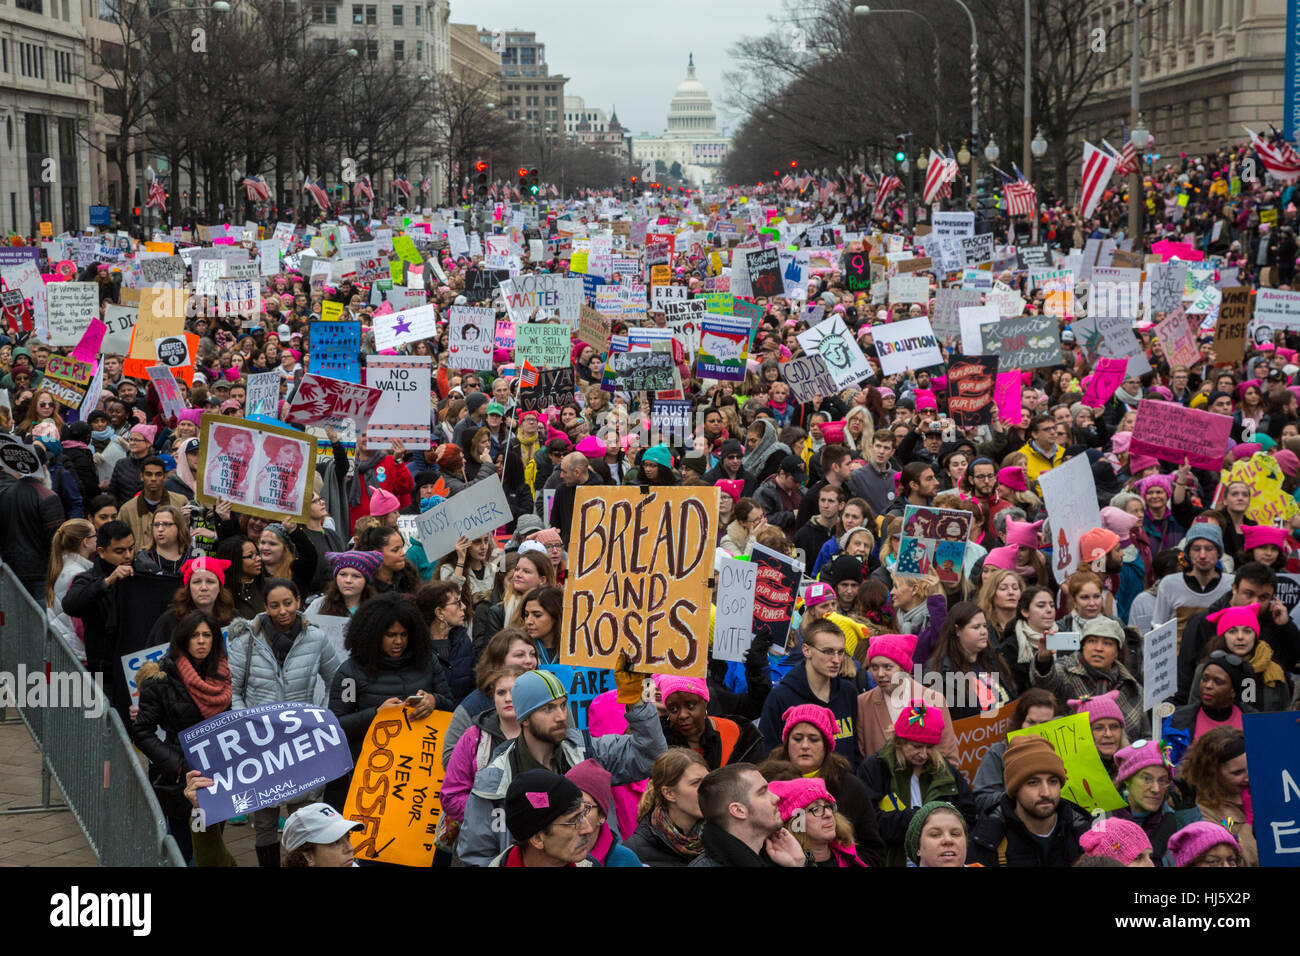 Washington, DC USA - 21. Januar 2017 - die Frauen Marsch auf Washington zog eine geschätzte halbe Million zur Hauptstadt der Nation, Präsident Donald Trump zu protestieren. Es war eine weit größere Masse als seiner Amtseinführung am Vortag erlebt hatte. Bildnachweis: Jim West/Alamy Live-Nachrichten Stockfoto